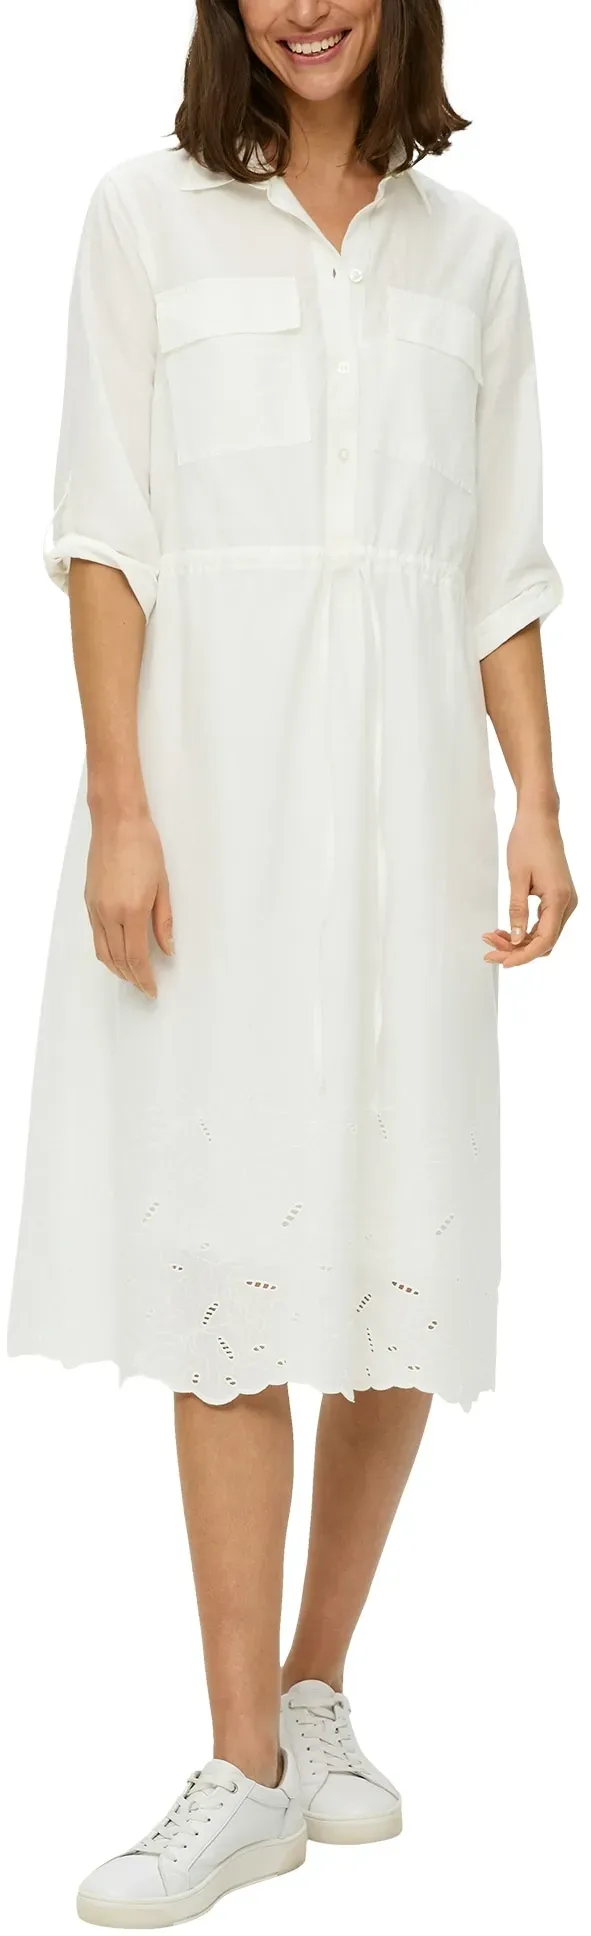 Hemdblusenkleid S.OLIVER Gr. 36, N-Gr, weiß (offwhite) Damen Kleider Freizeitkleider mit Broderie Anglaise